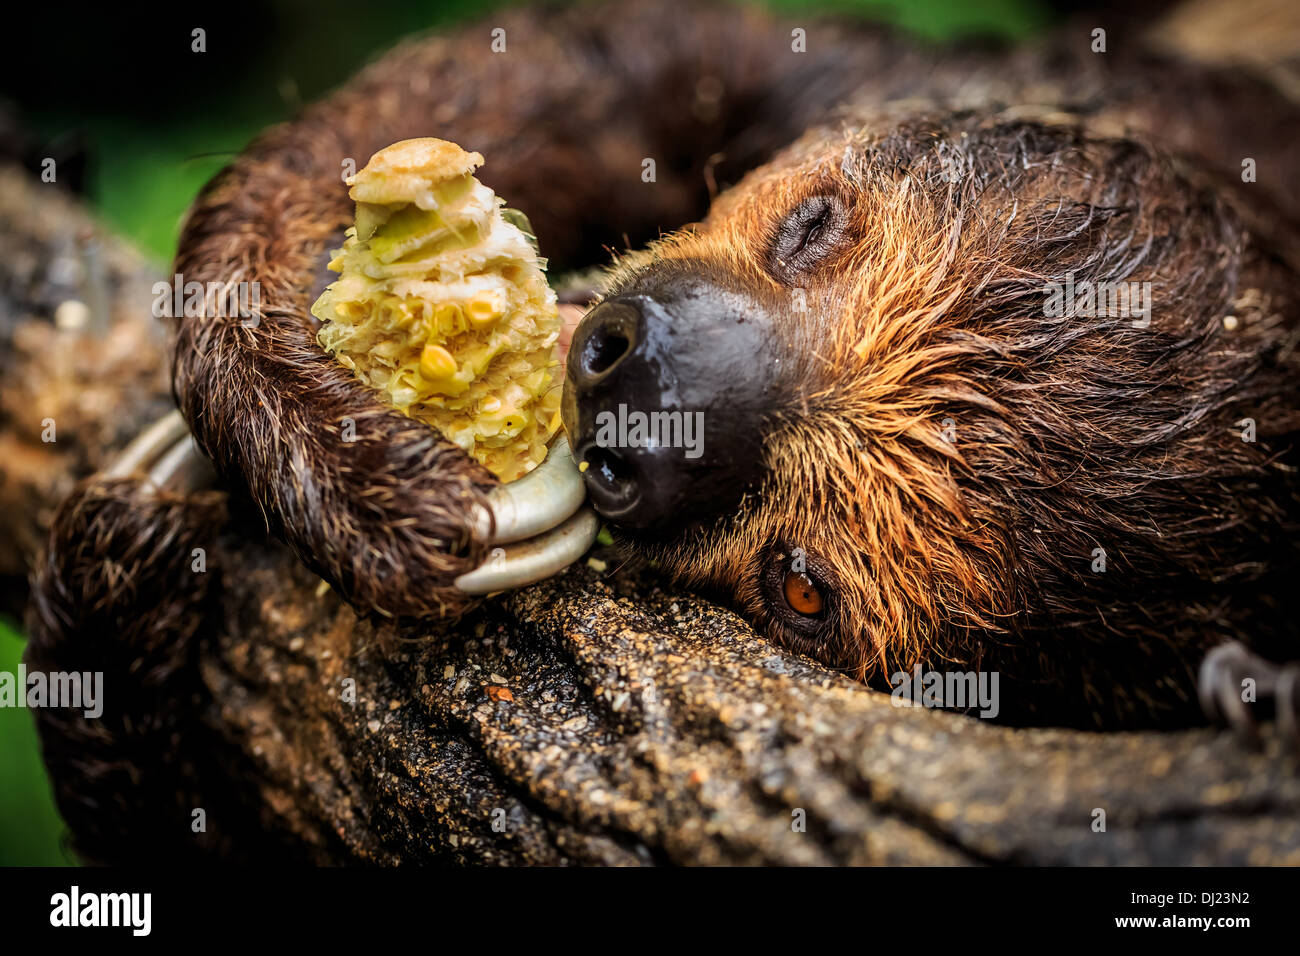 Megalonychidae; (two-toed sloth), Singapore Zoo, Singapore Stock Photo